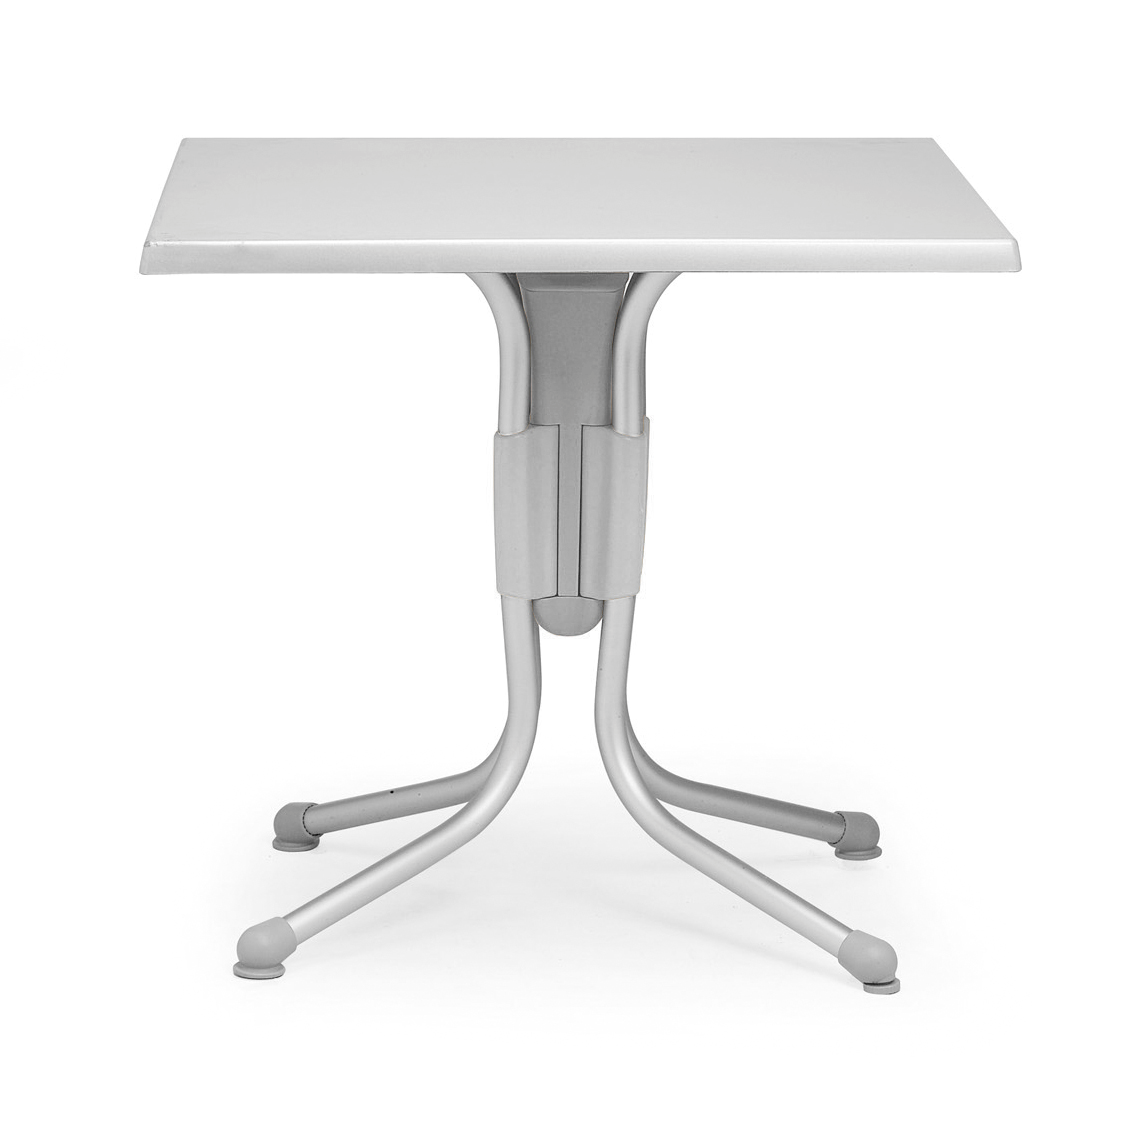 Nardi 31" Grigio Polo Square Table in Silver/Grey